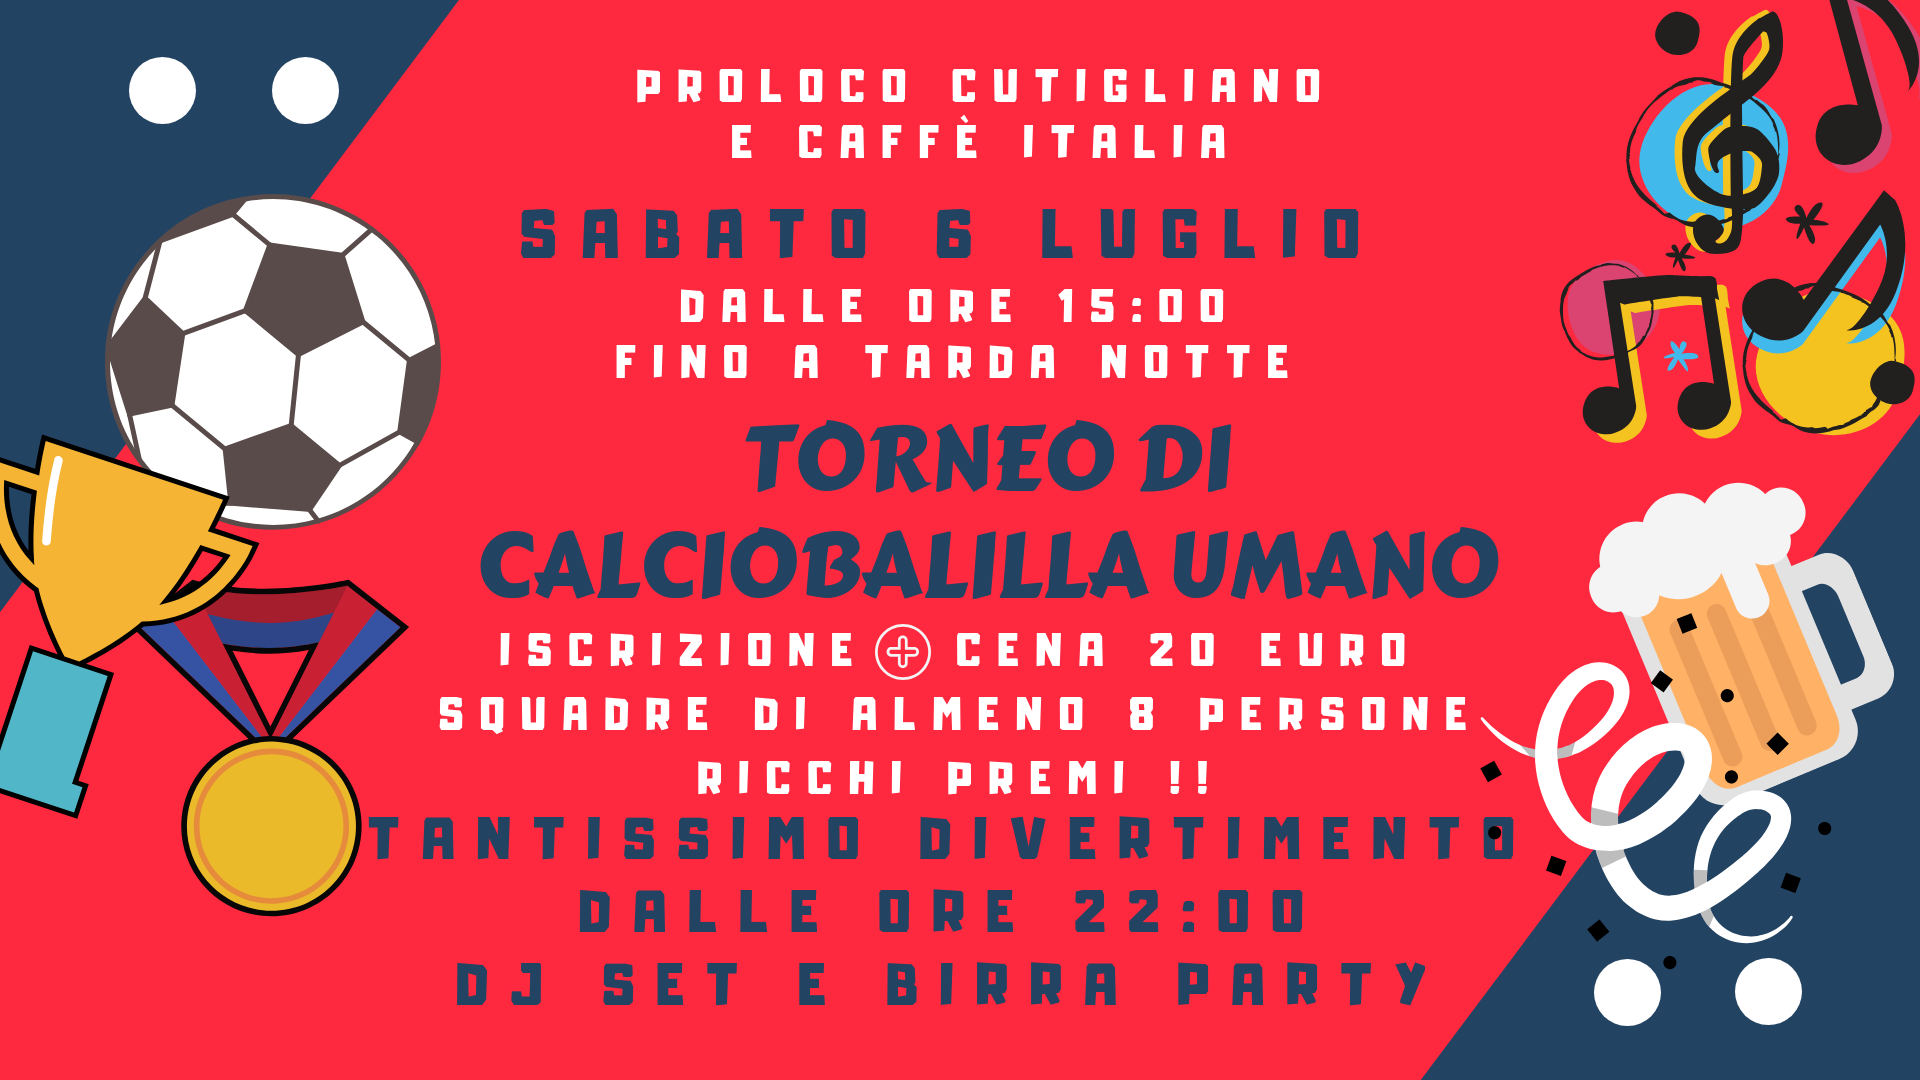 Torneo di Calciobalilla umano + Birra party